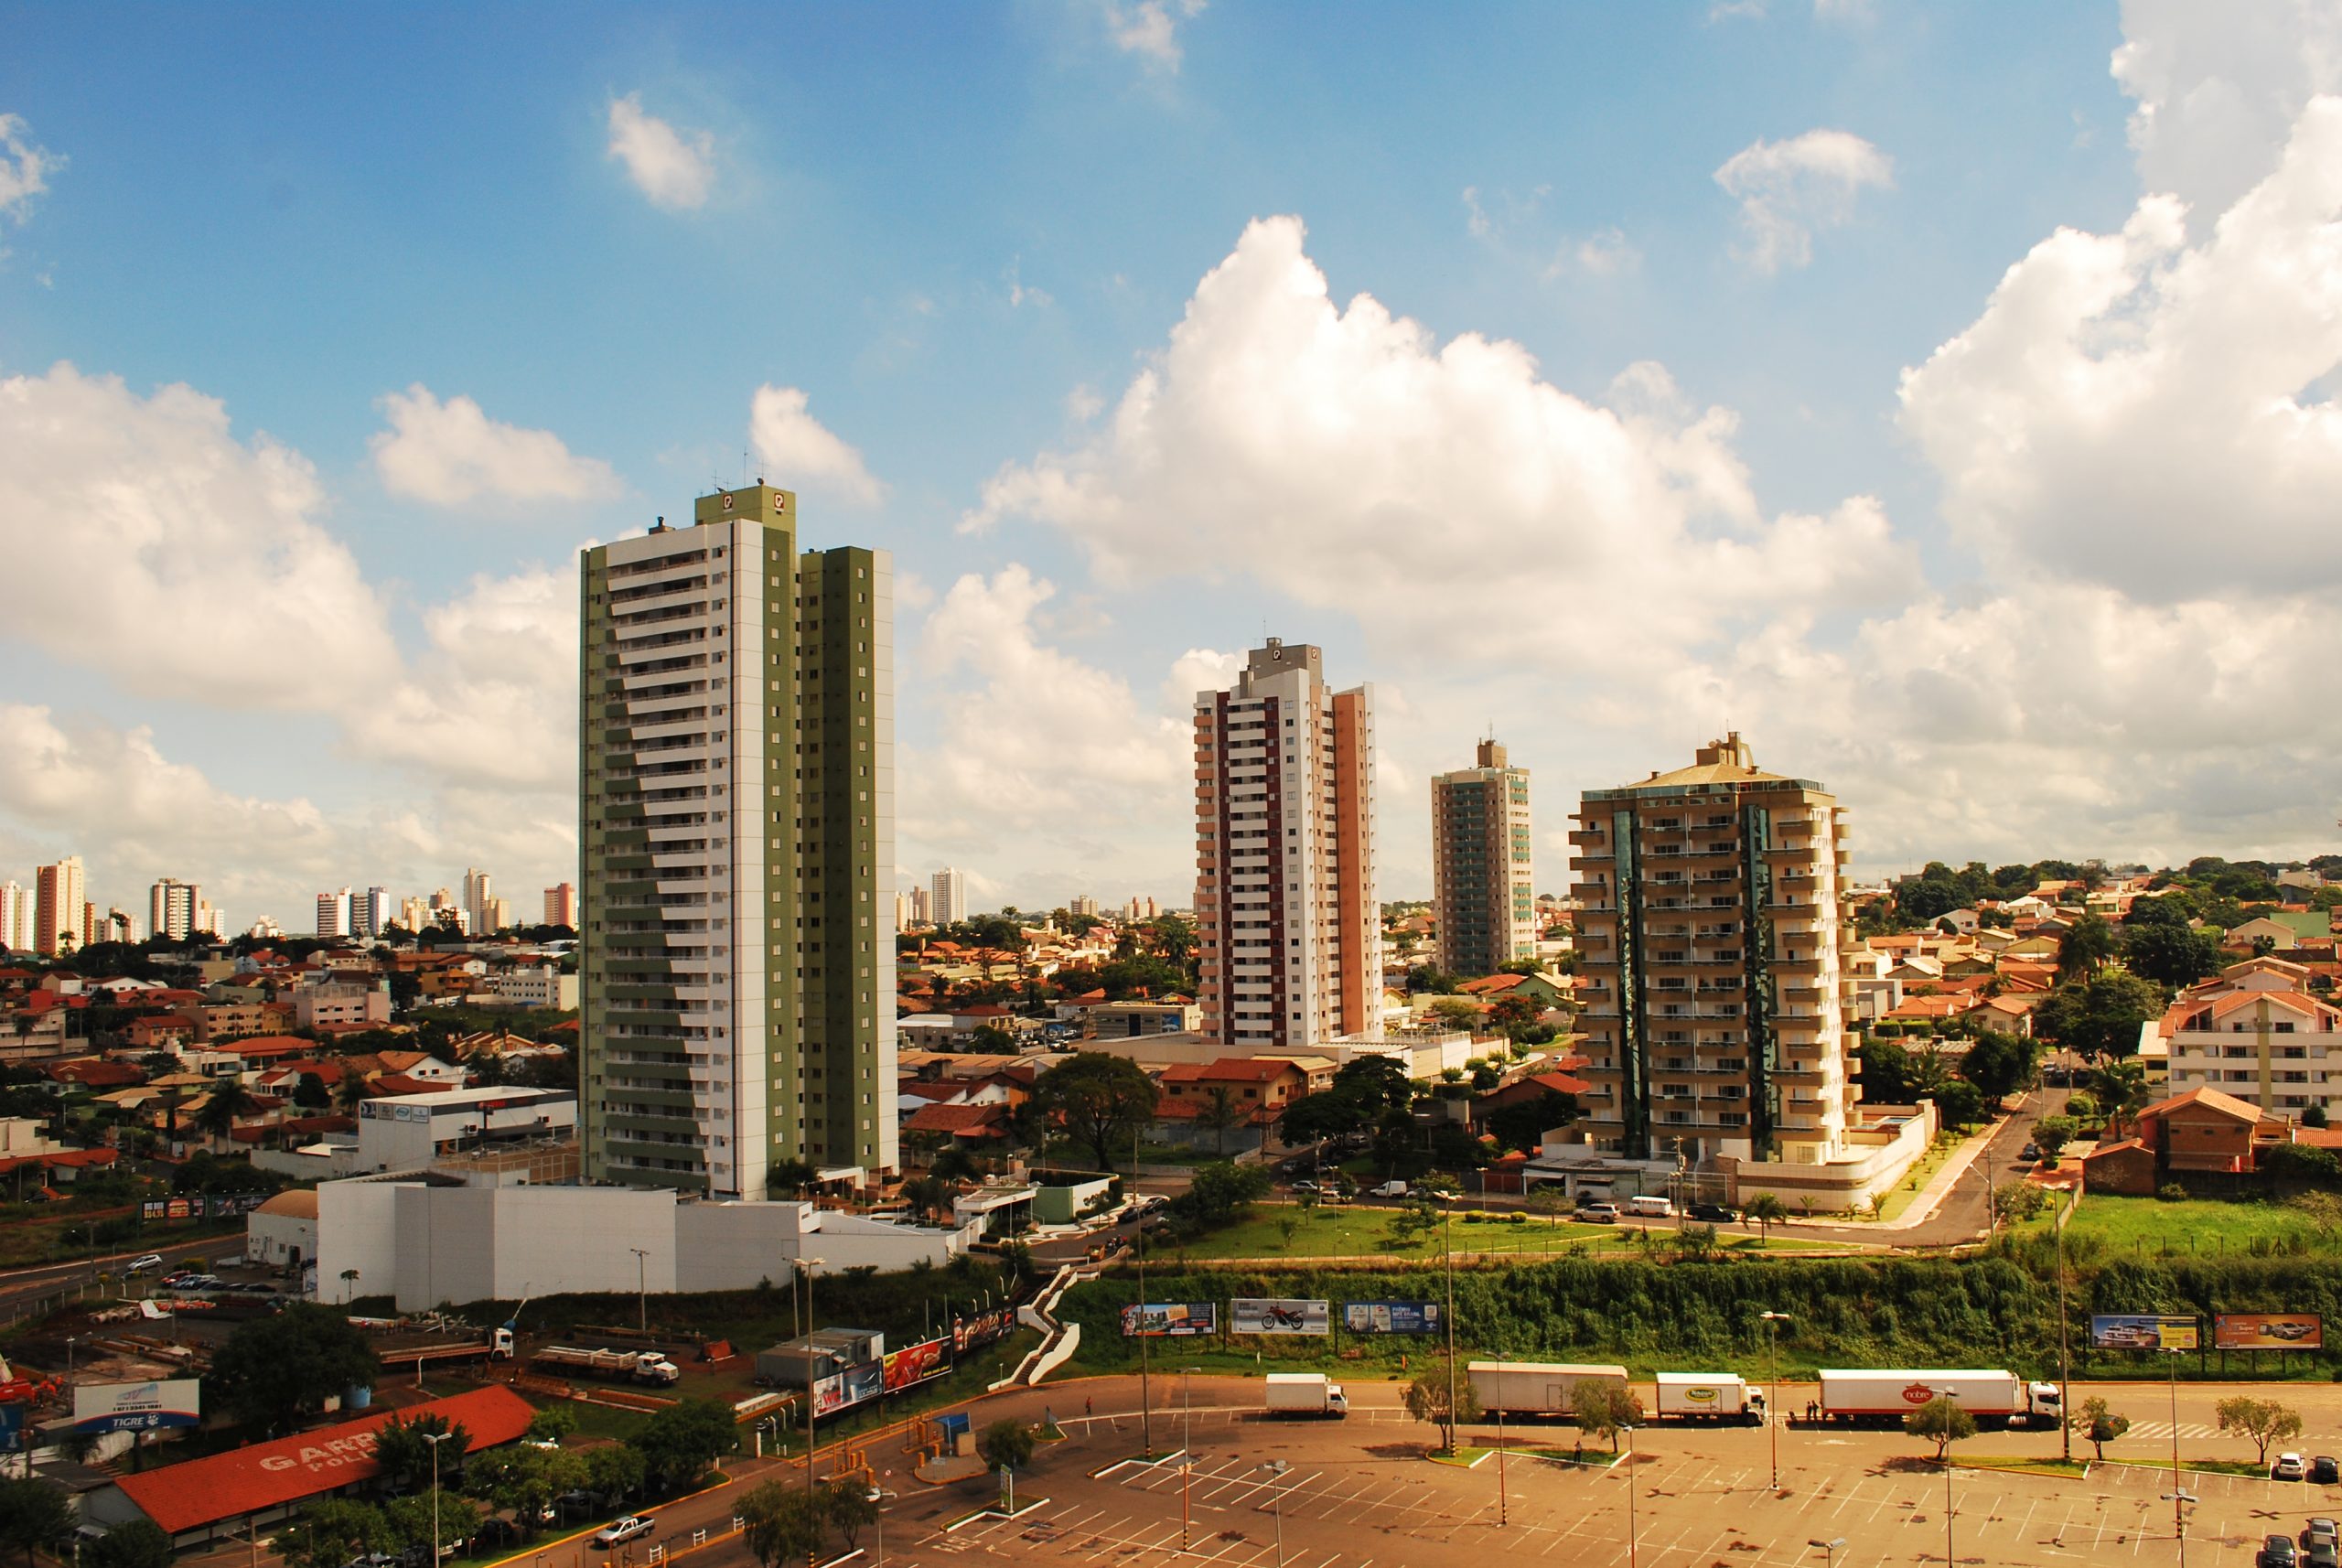 City in Brazil